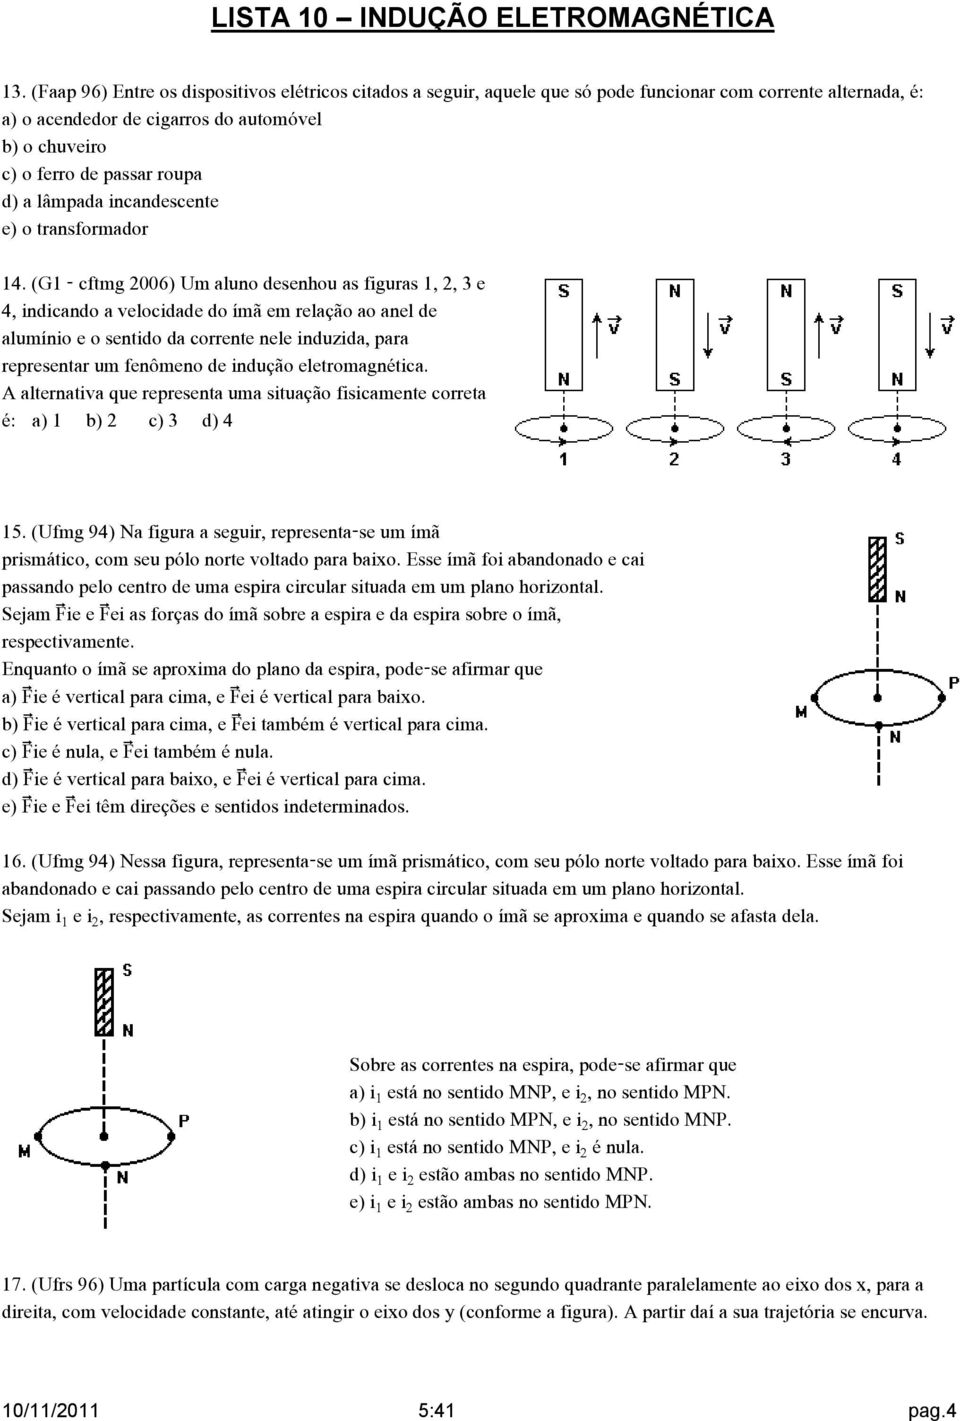 (G1 - cftmg 2006) Um aluno desenhou as figuras 1, 2, 3 e 4, indicando a velocidade do ímã em relação ao anel de alumínio e o sentido da corrente nele induzida, para representar um fenômeno de indução